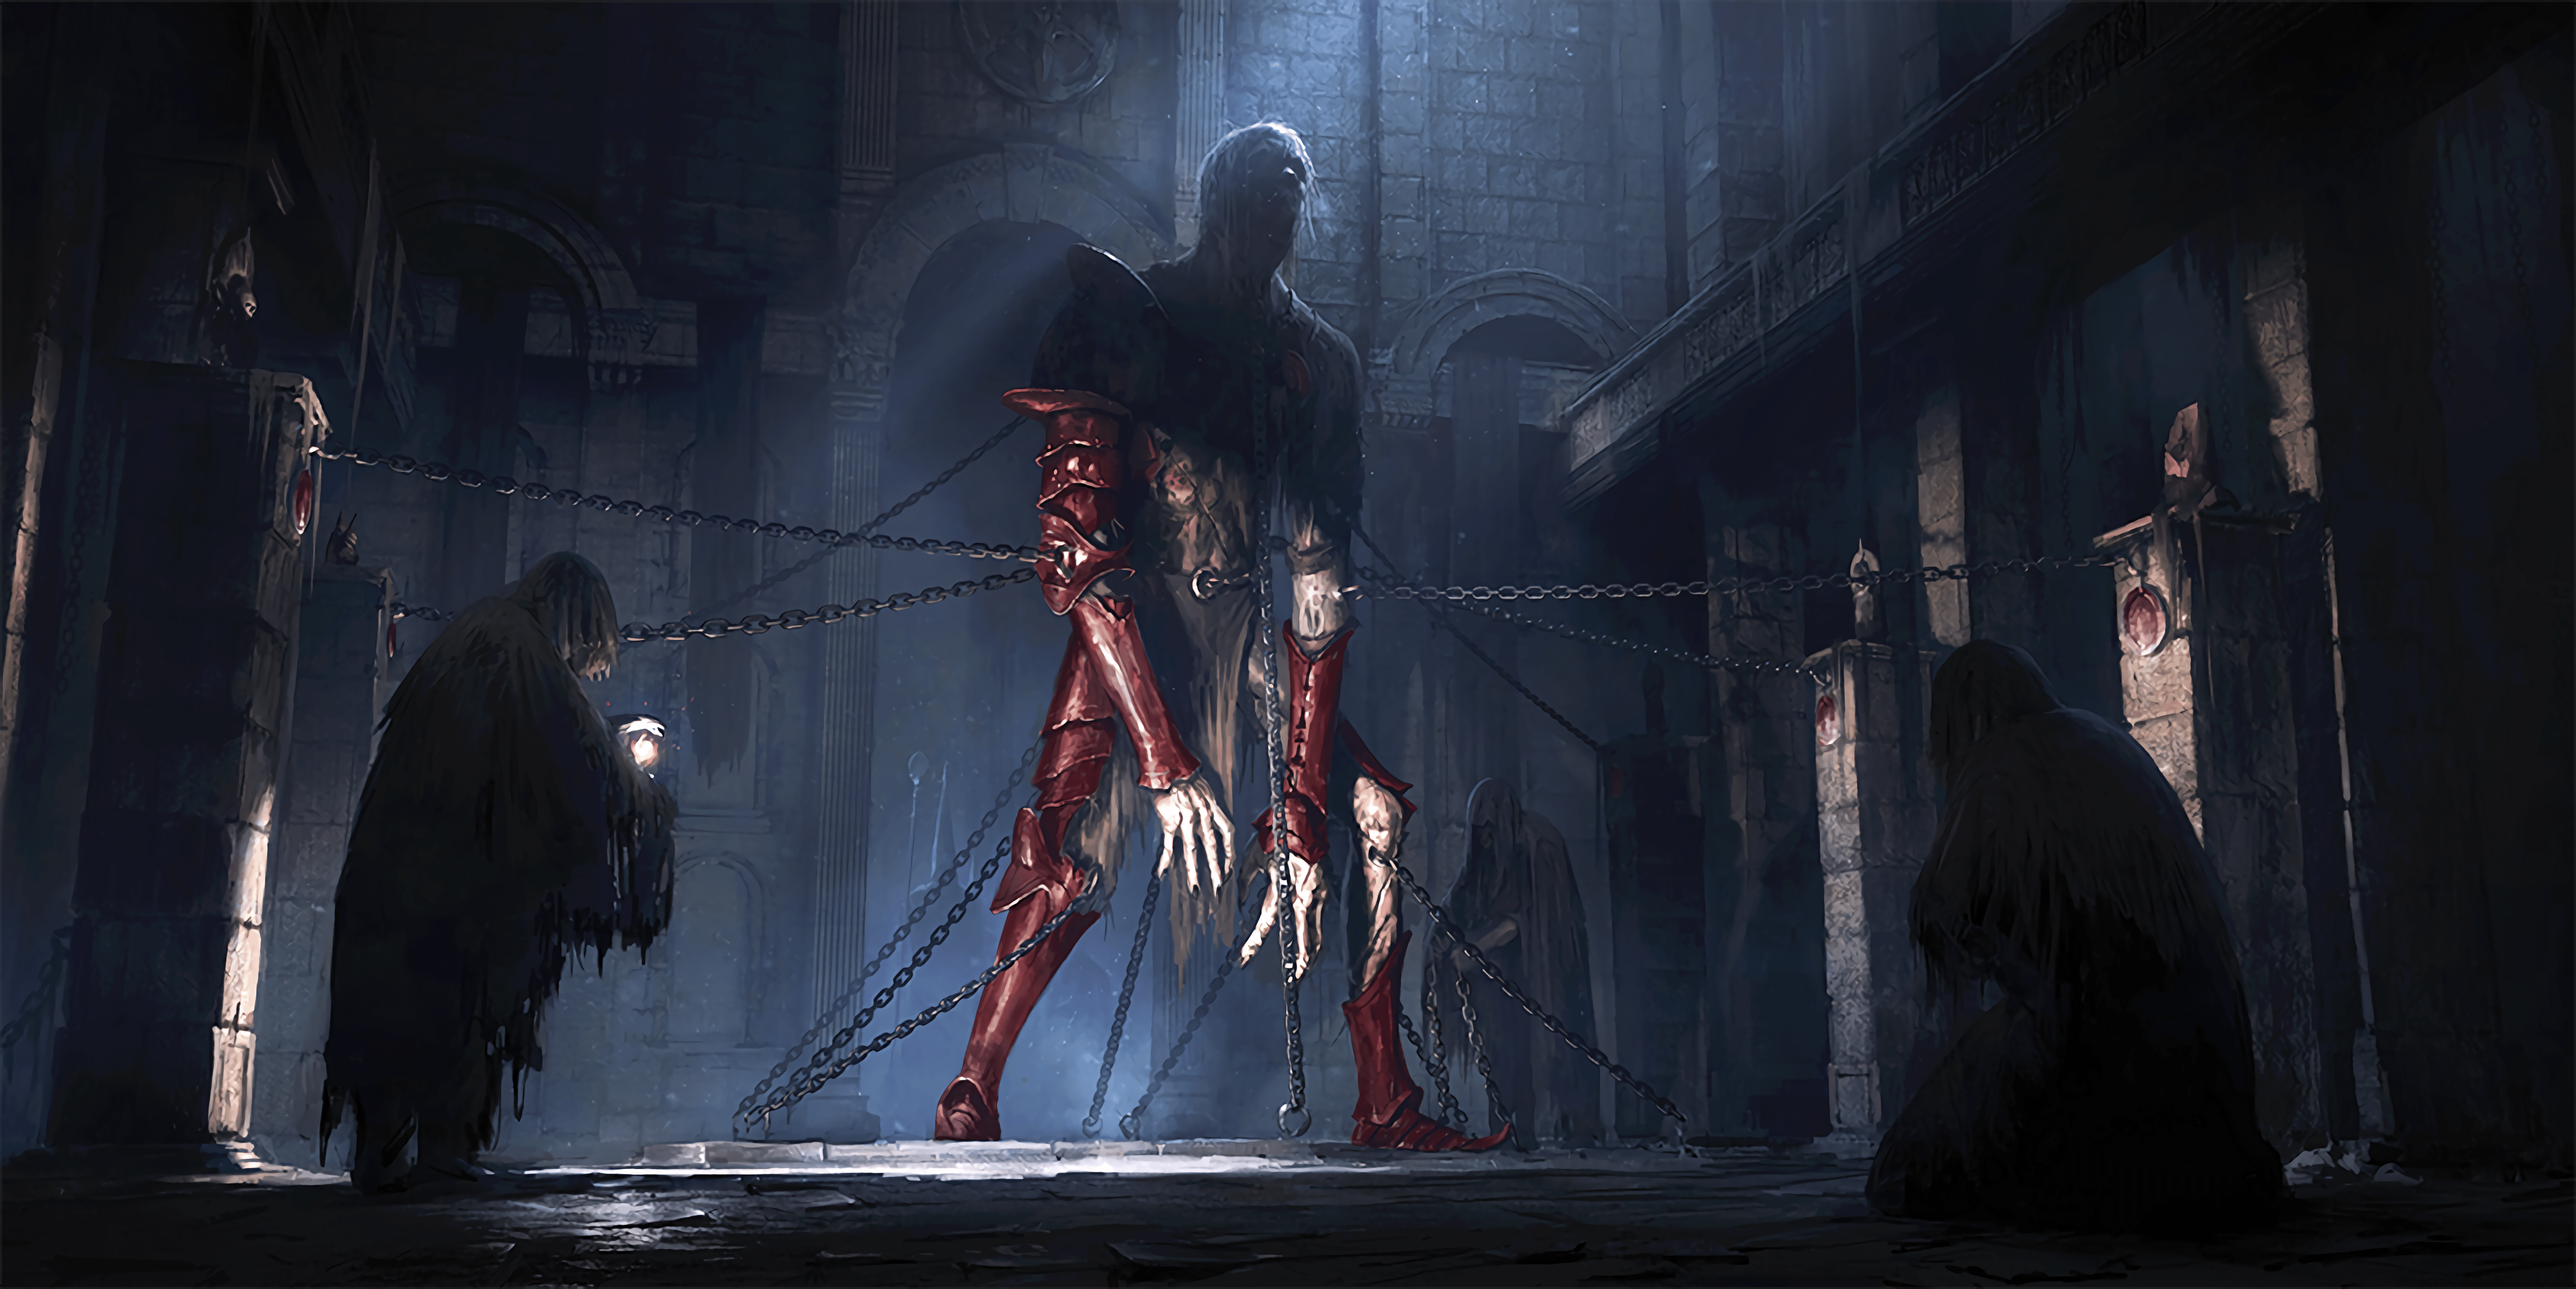 Blood Sword art by Eyrk Szczygiel